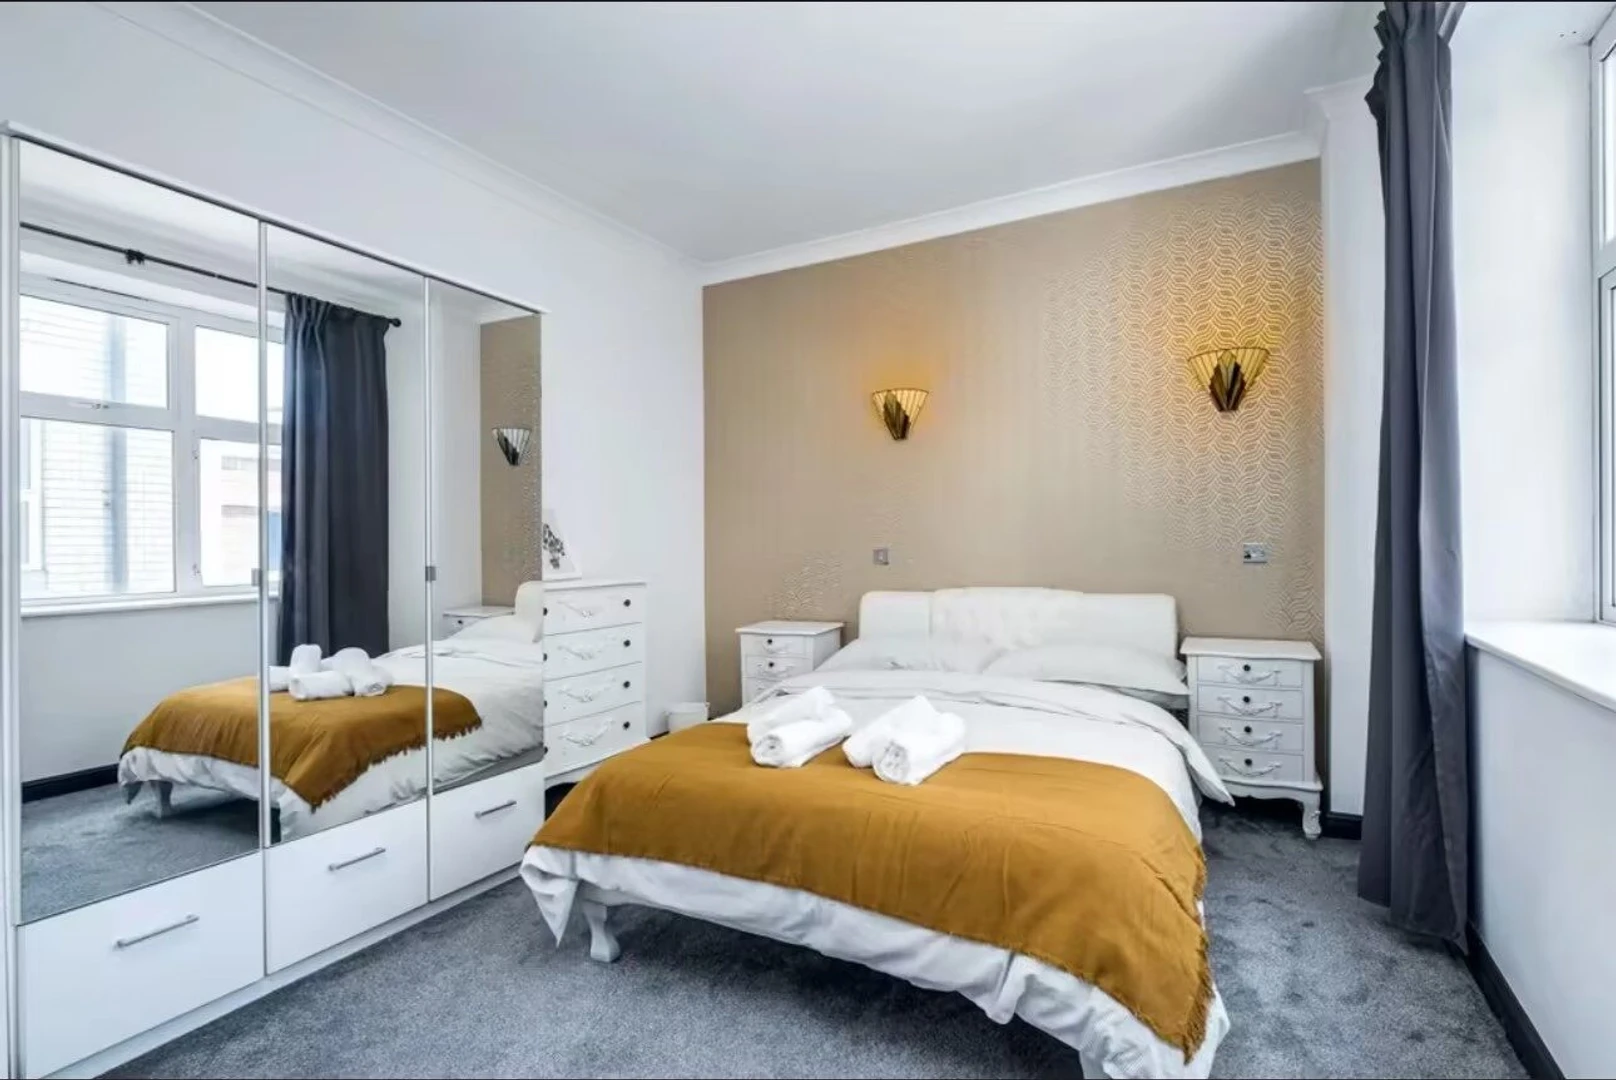 Chambre à louer avec lit double Birmingham